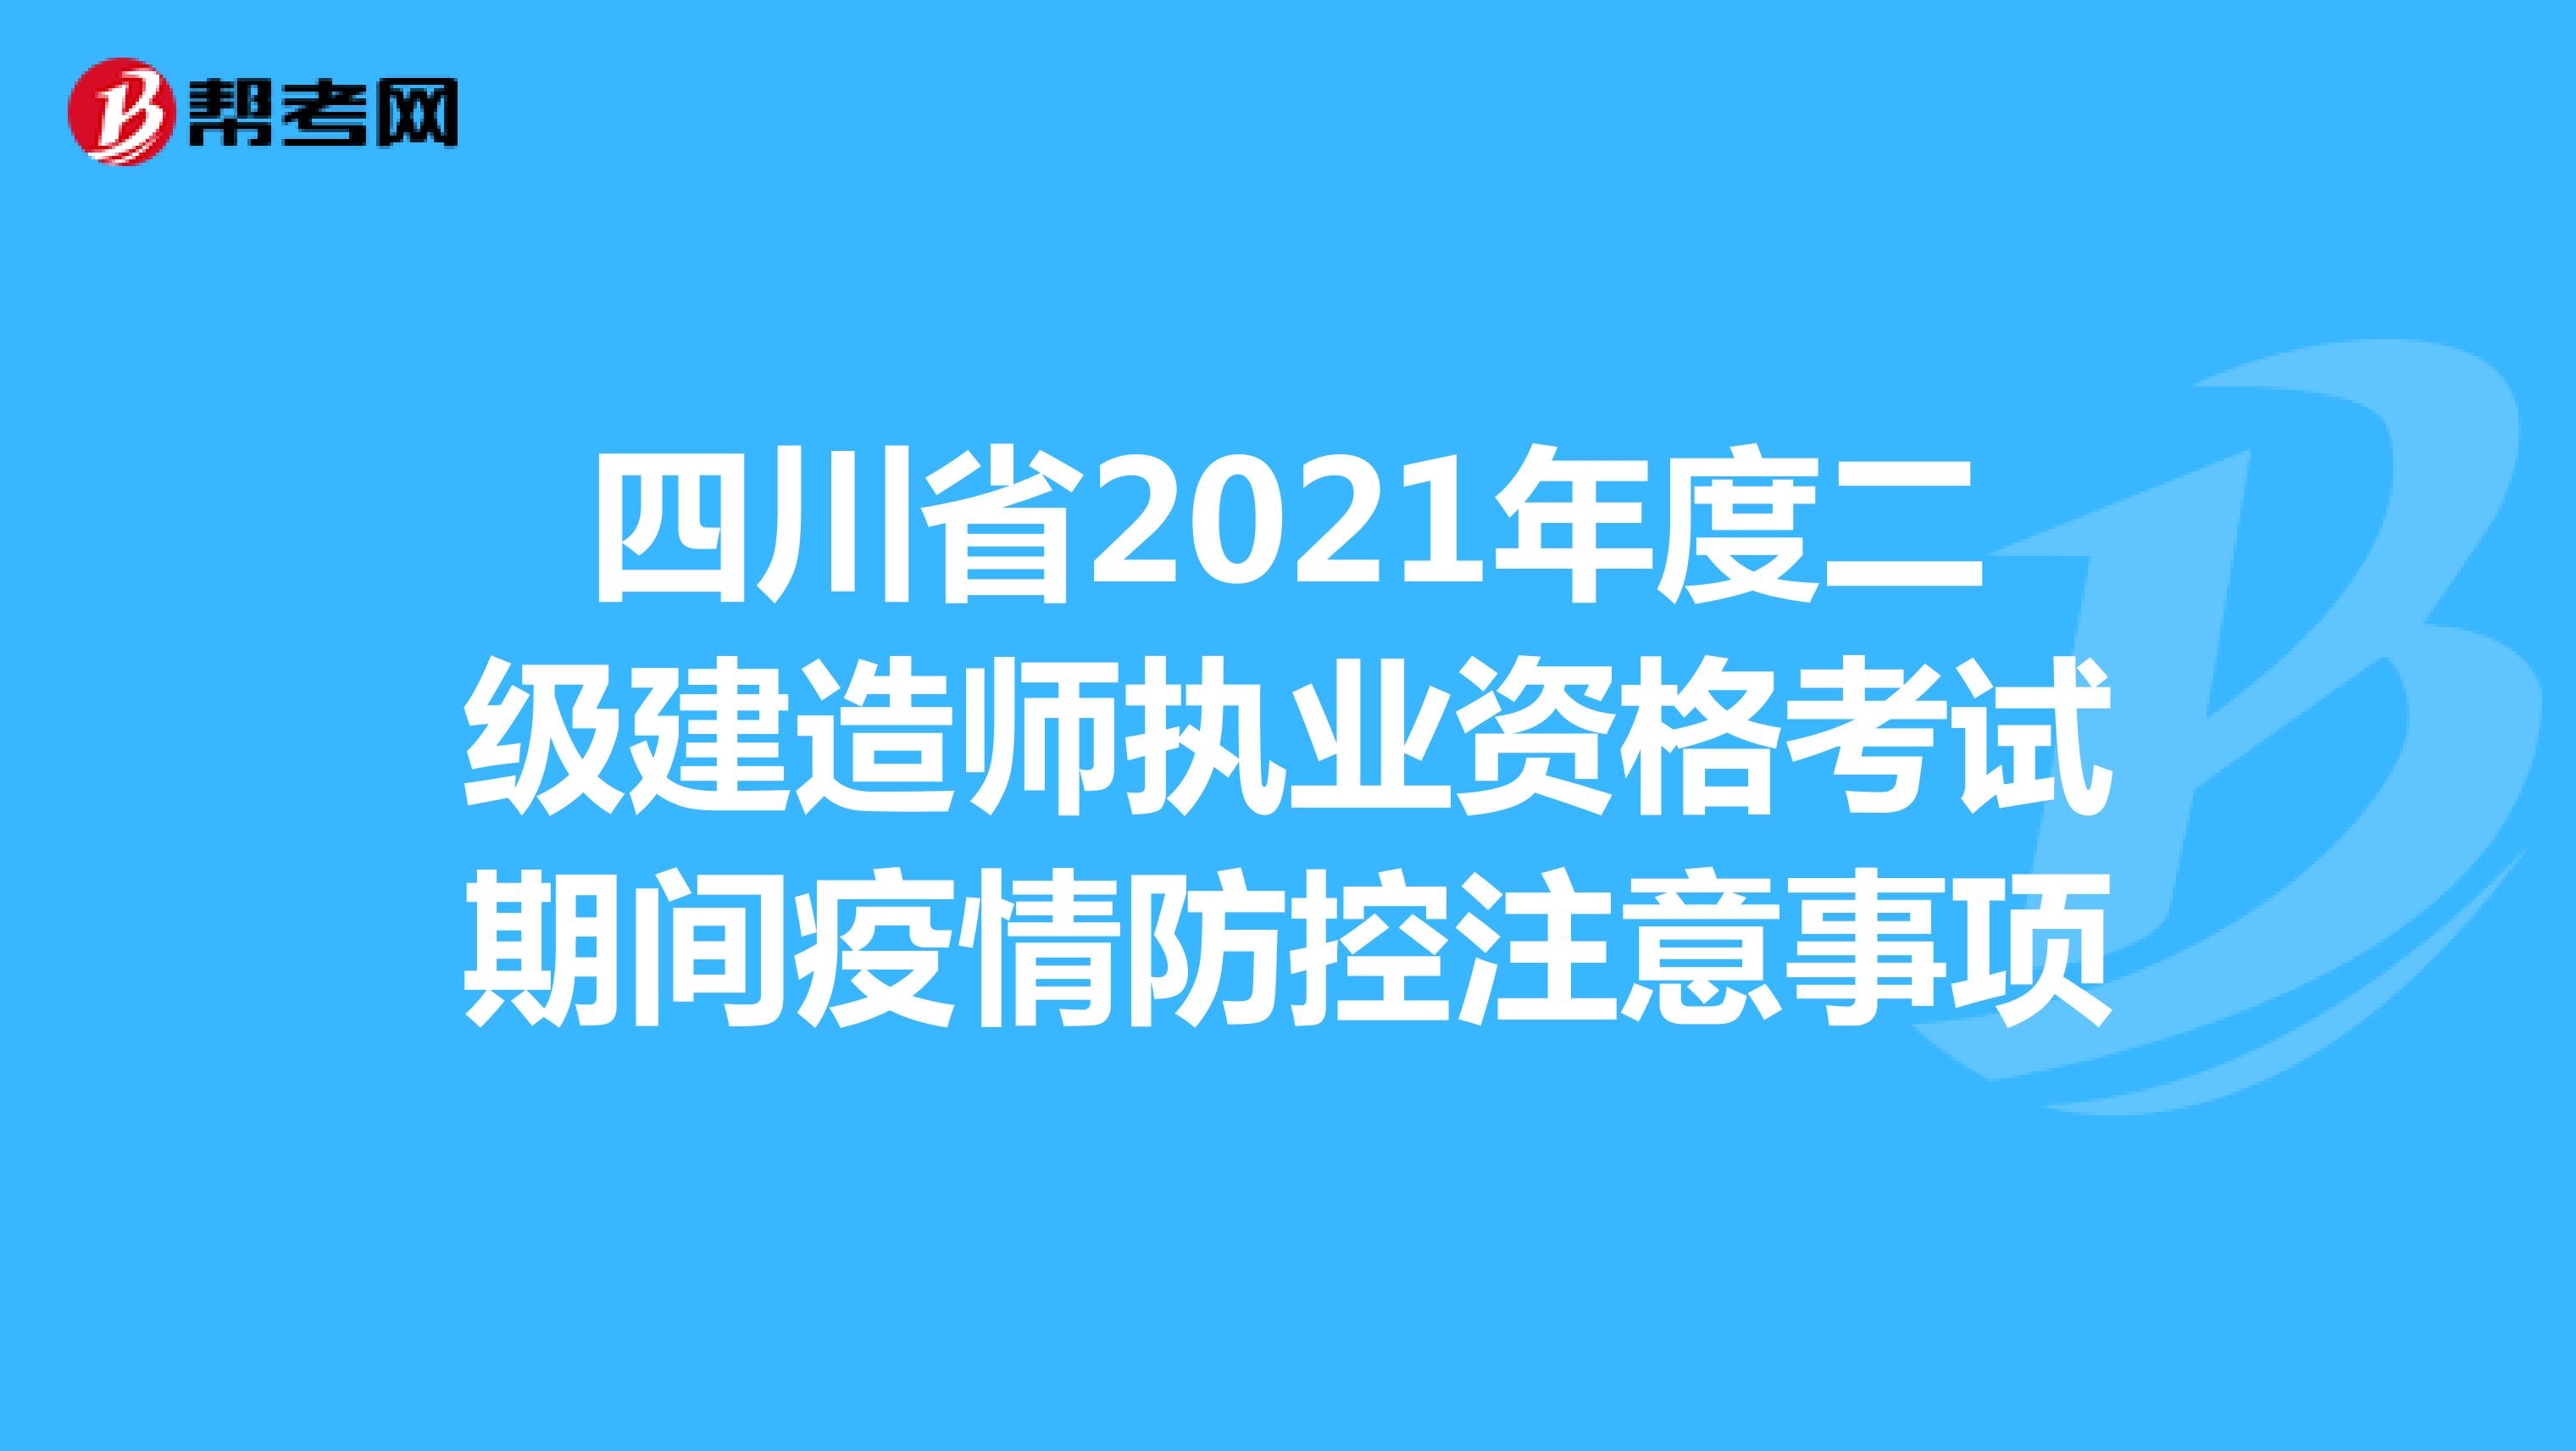 四川省2021年度二级建造师执业资格考试期间疫情防控注意事项